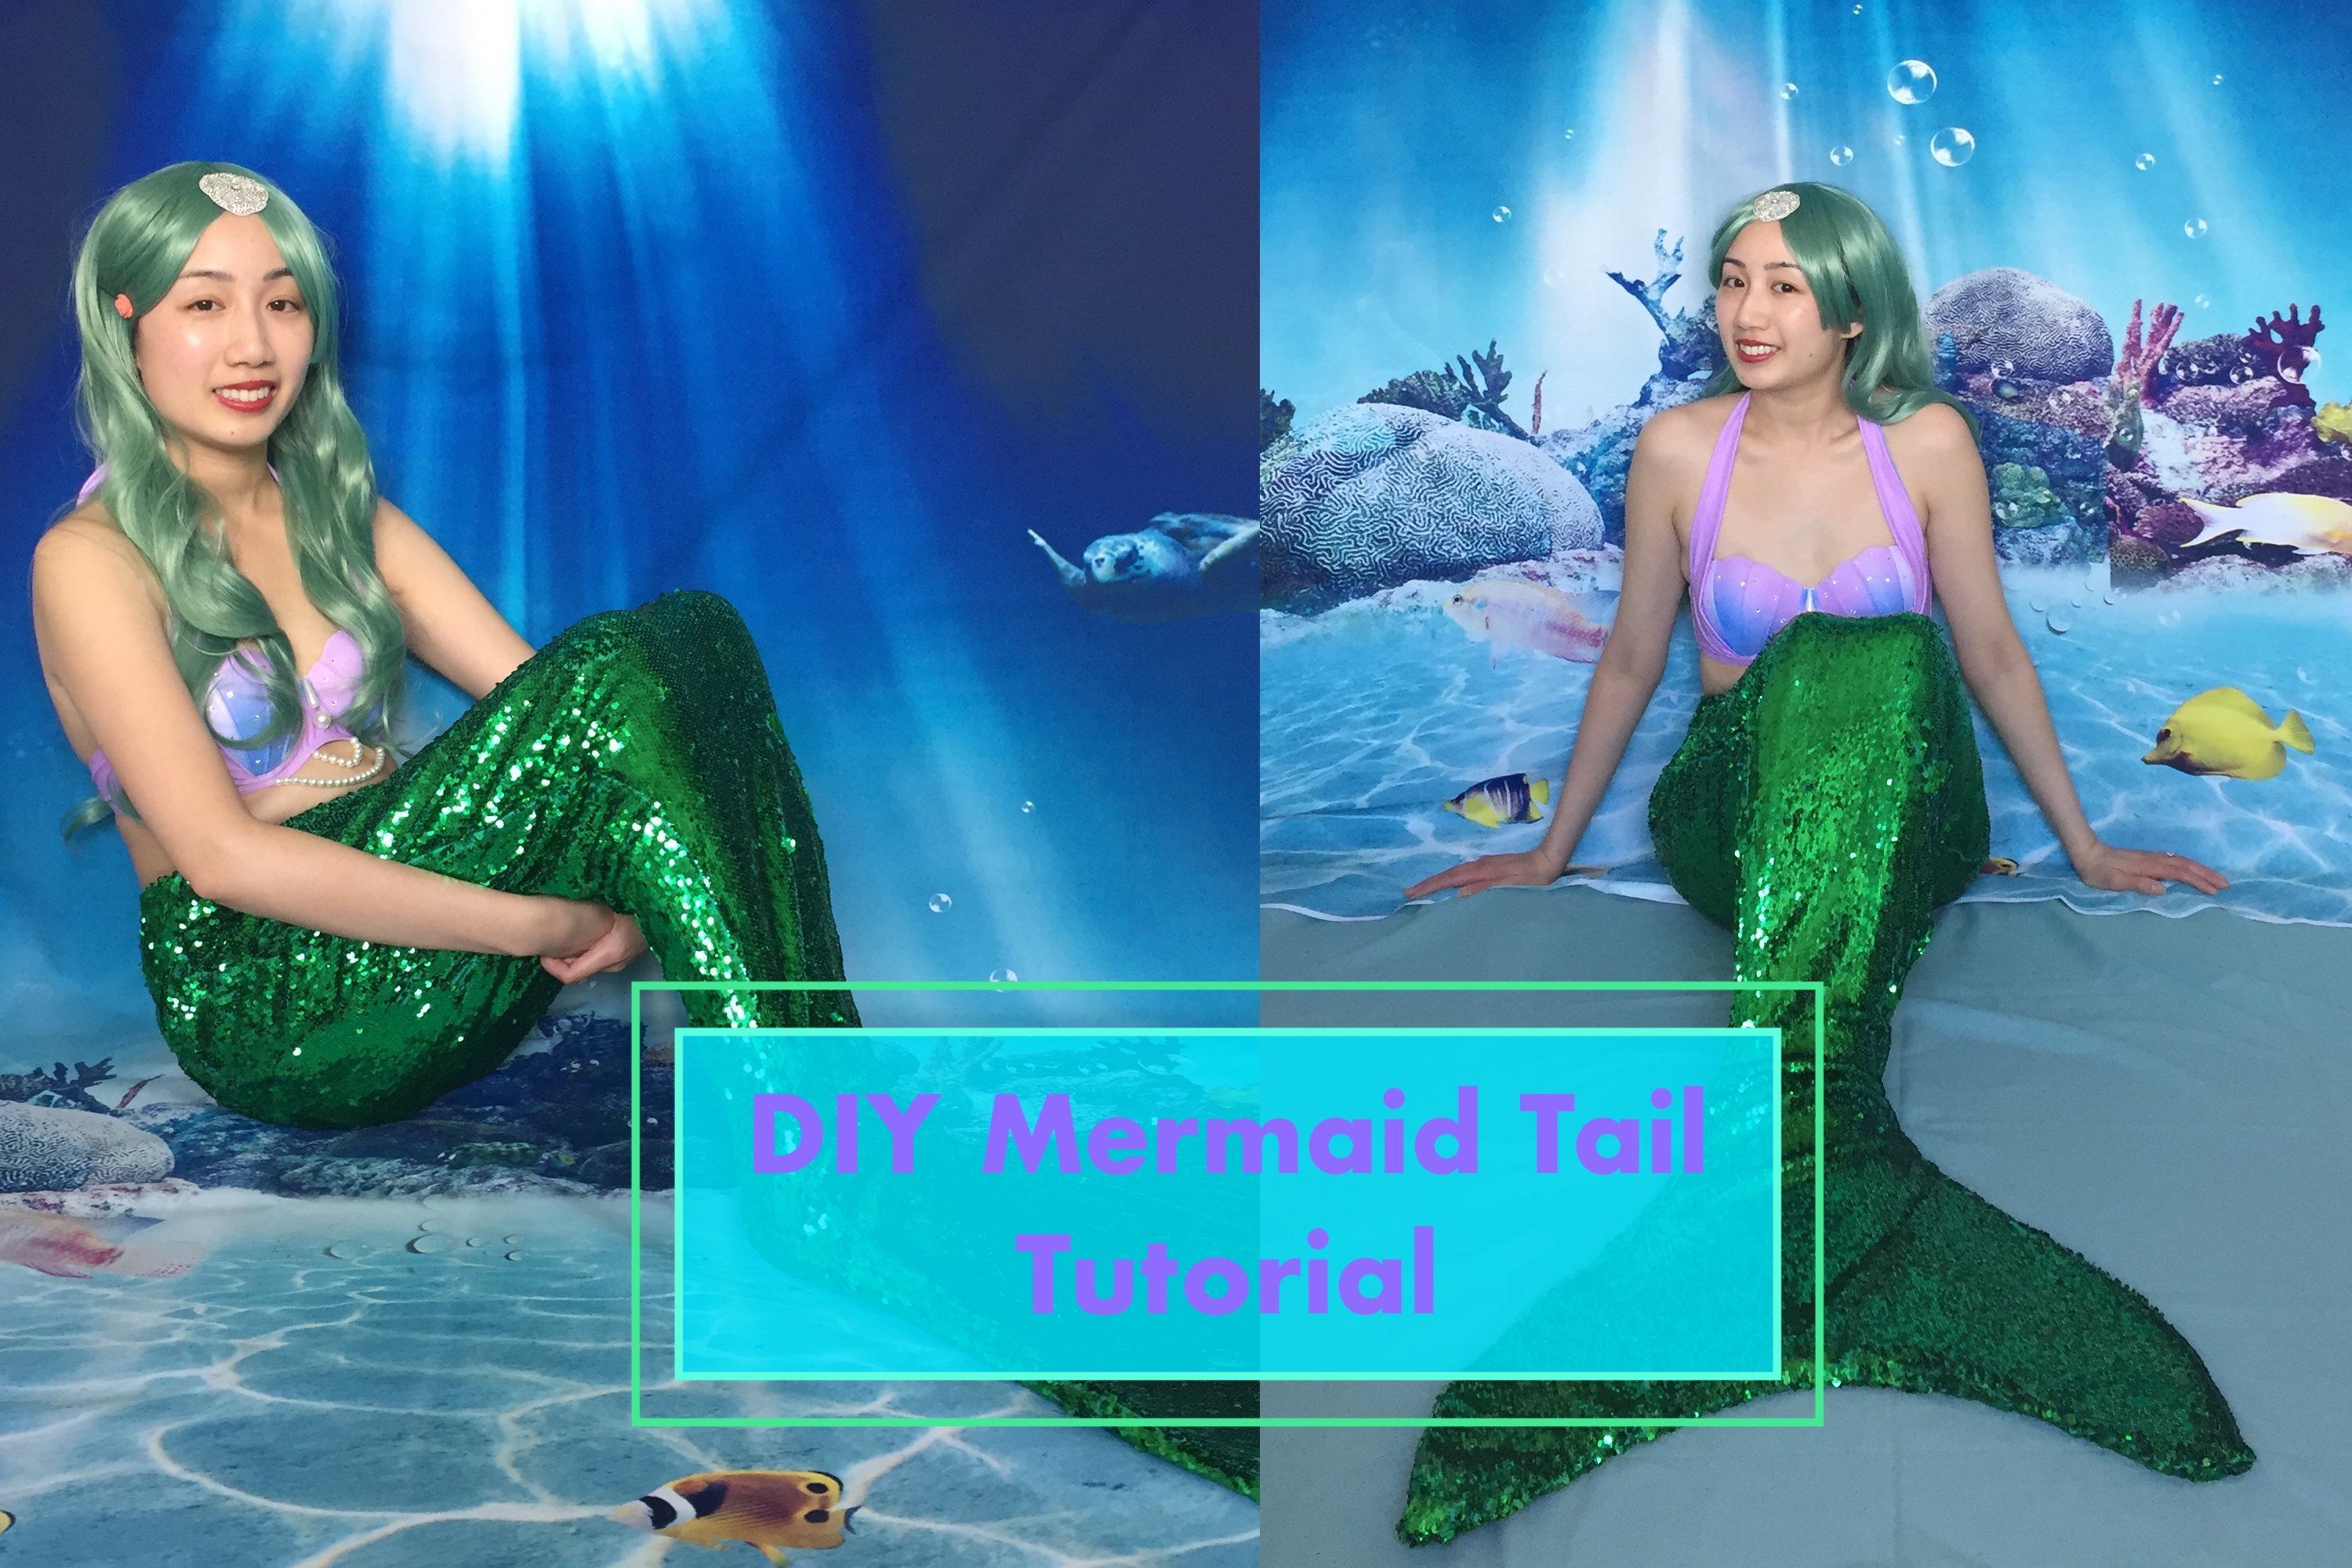 shell bra mermaid - Google Search  Mermaid diy, Mermaid halloween